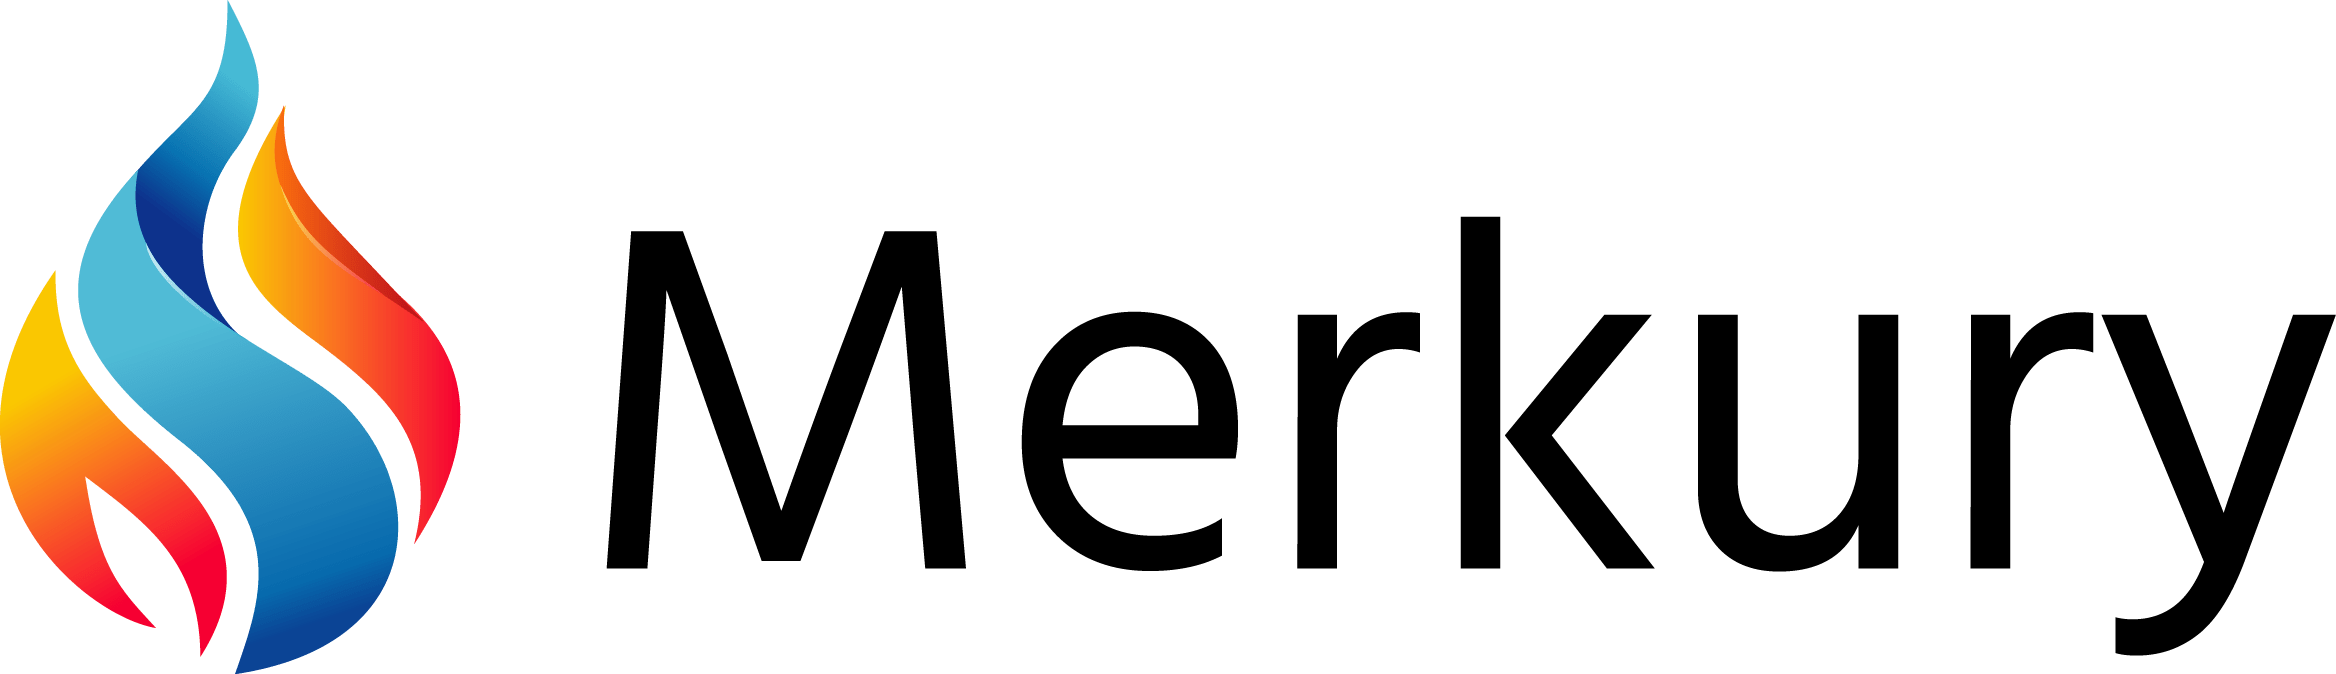 Merkury Mariusz Zieliński - logo